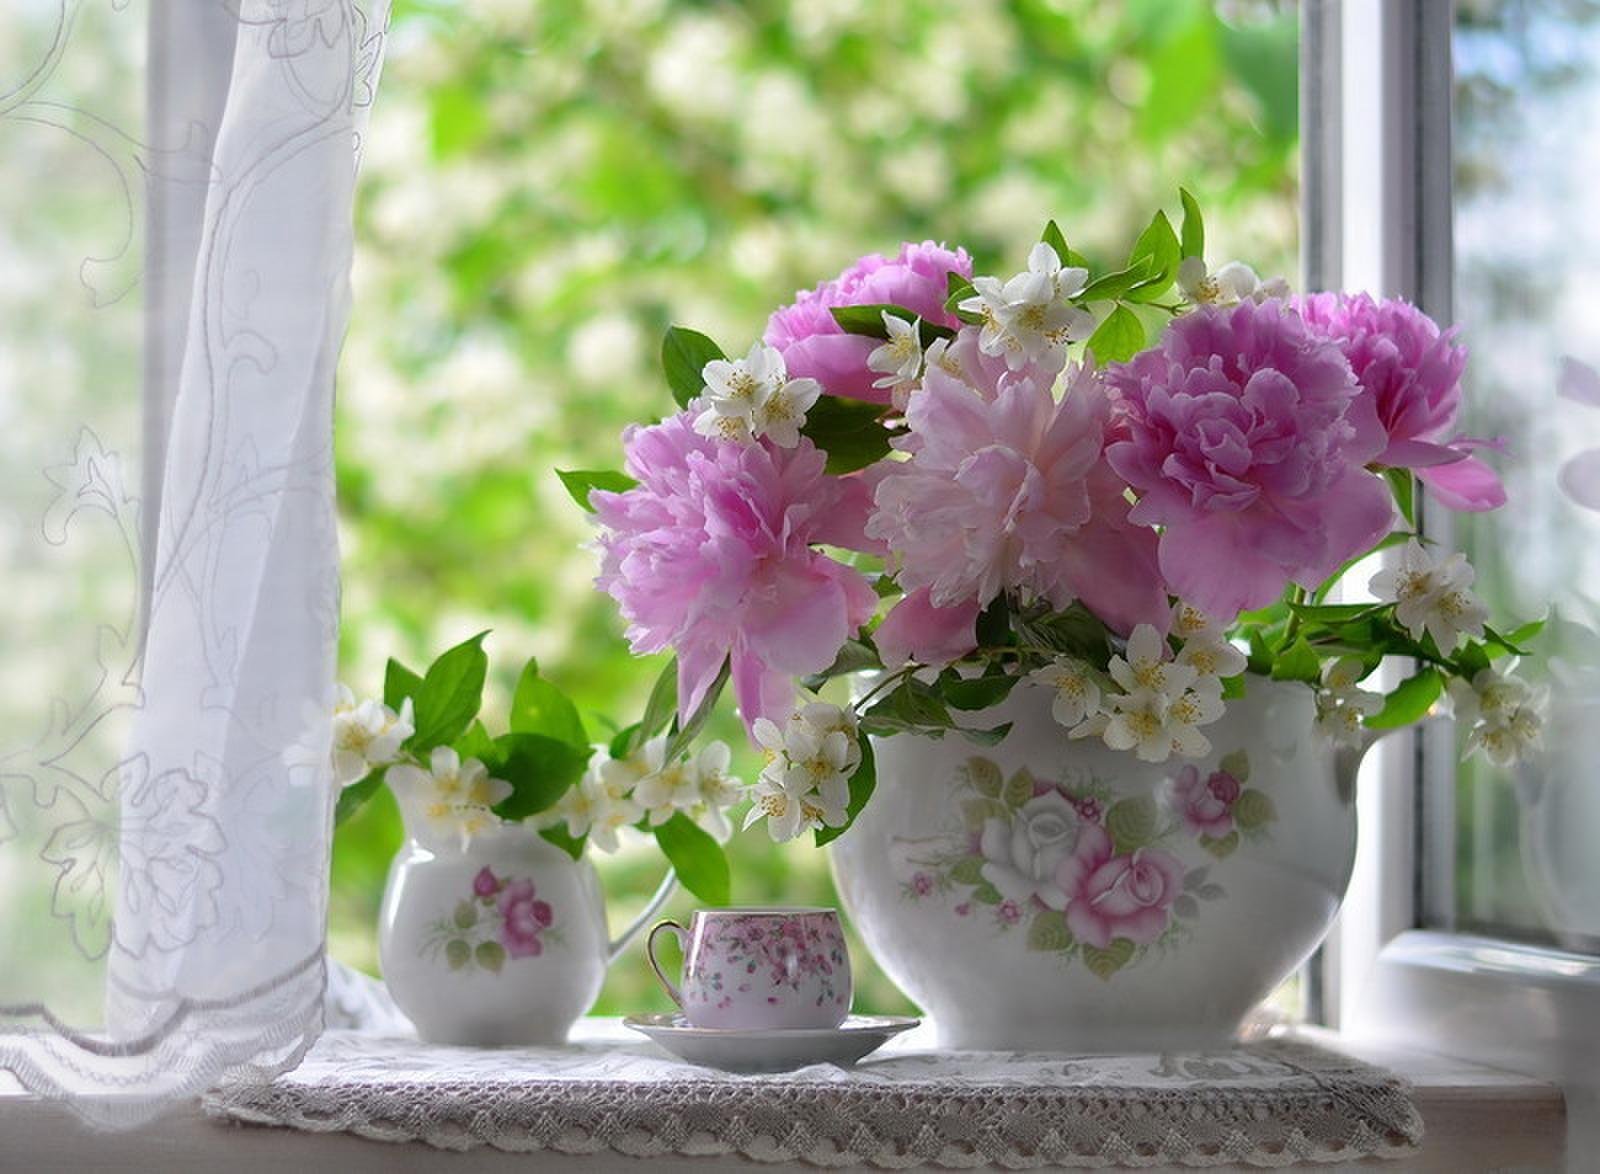 Красивого дня картинки. Цветы на окне. Пионы у окна. Летние цветы в вазе. Утренние цветы.